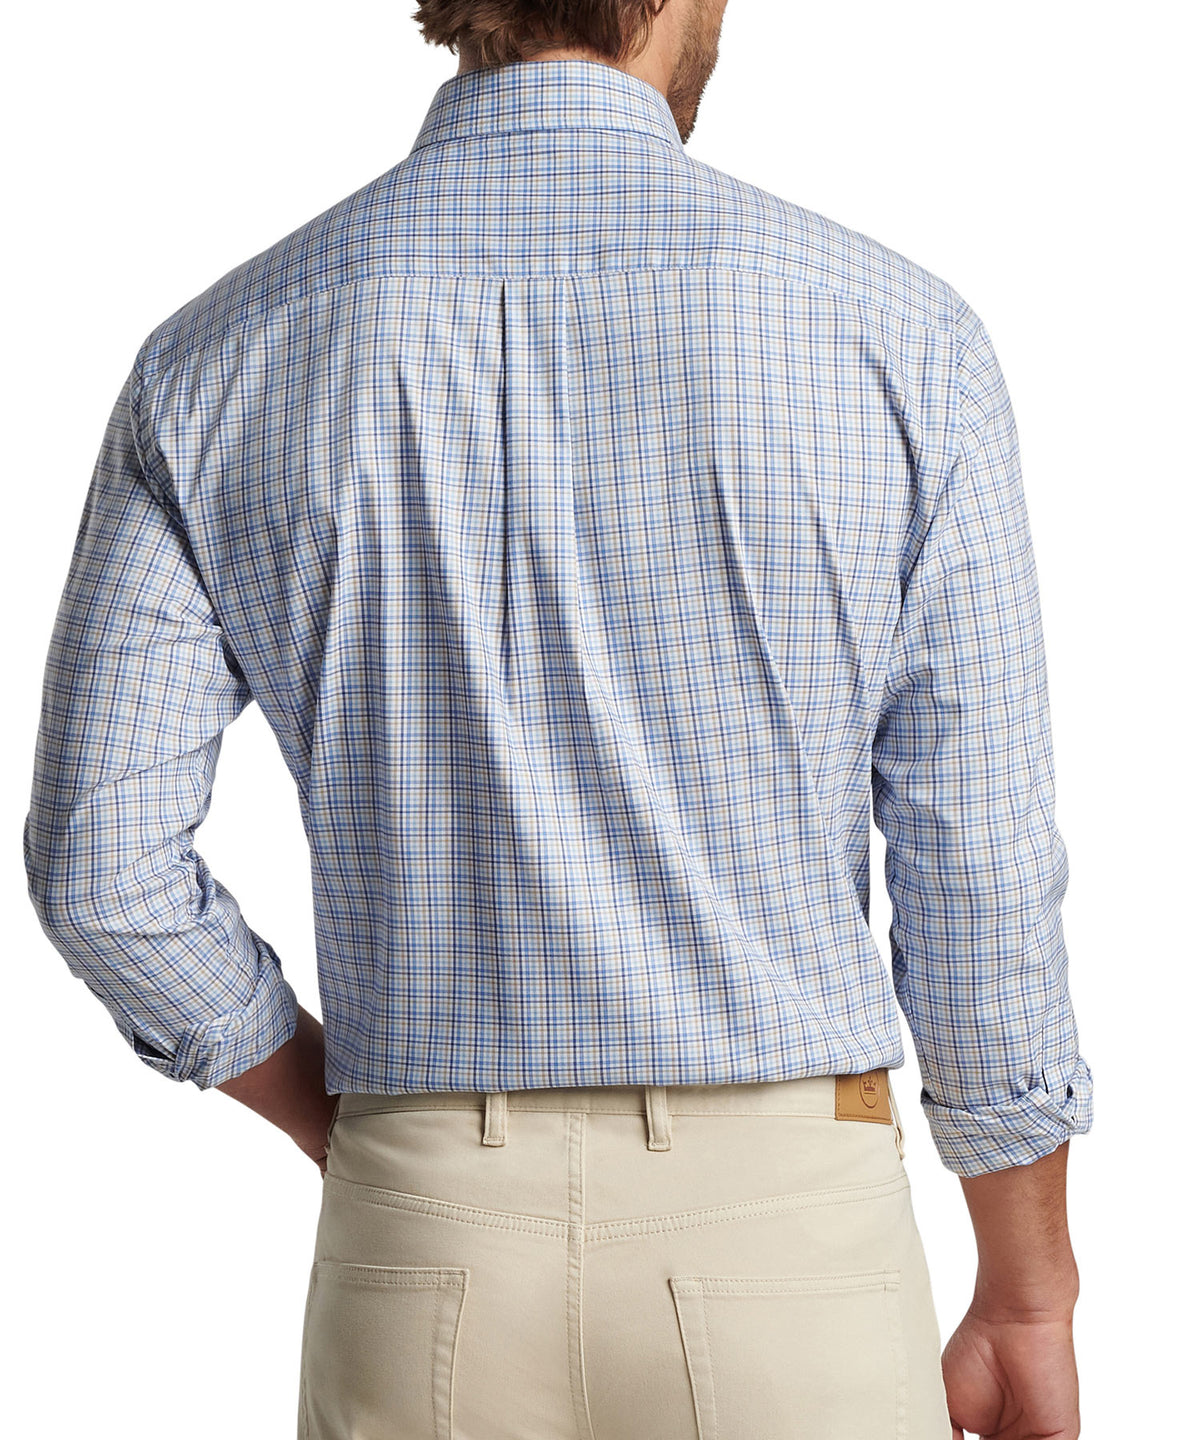 Peter Millar Long Sleeve Cutler Button-Down Collar Patterned Sport Shirt, Big & Tall